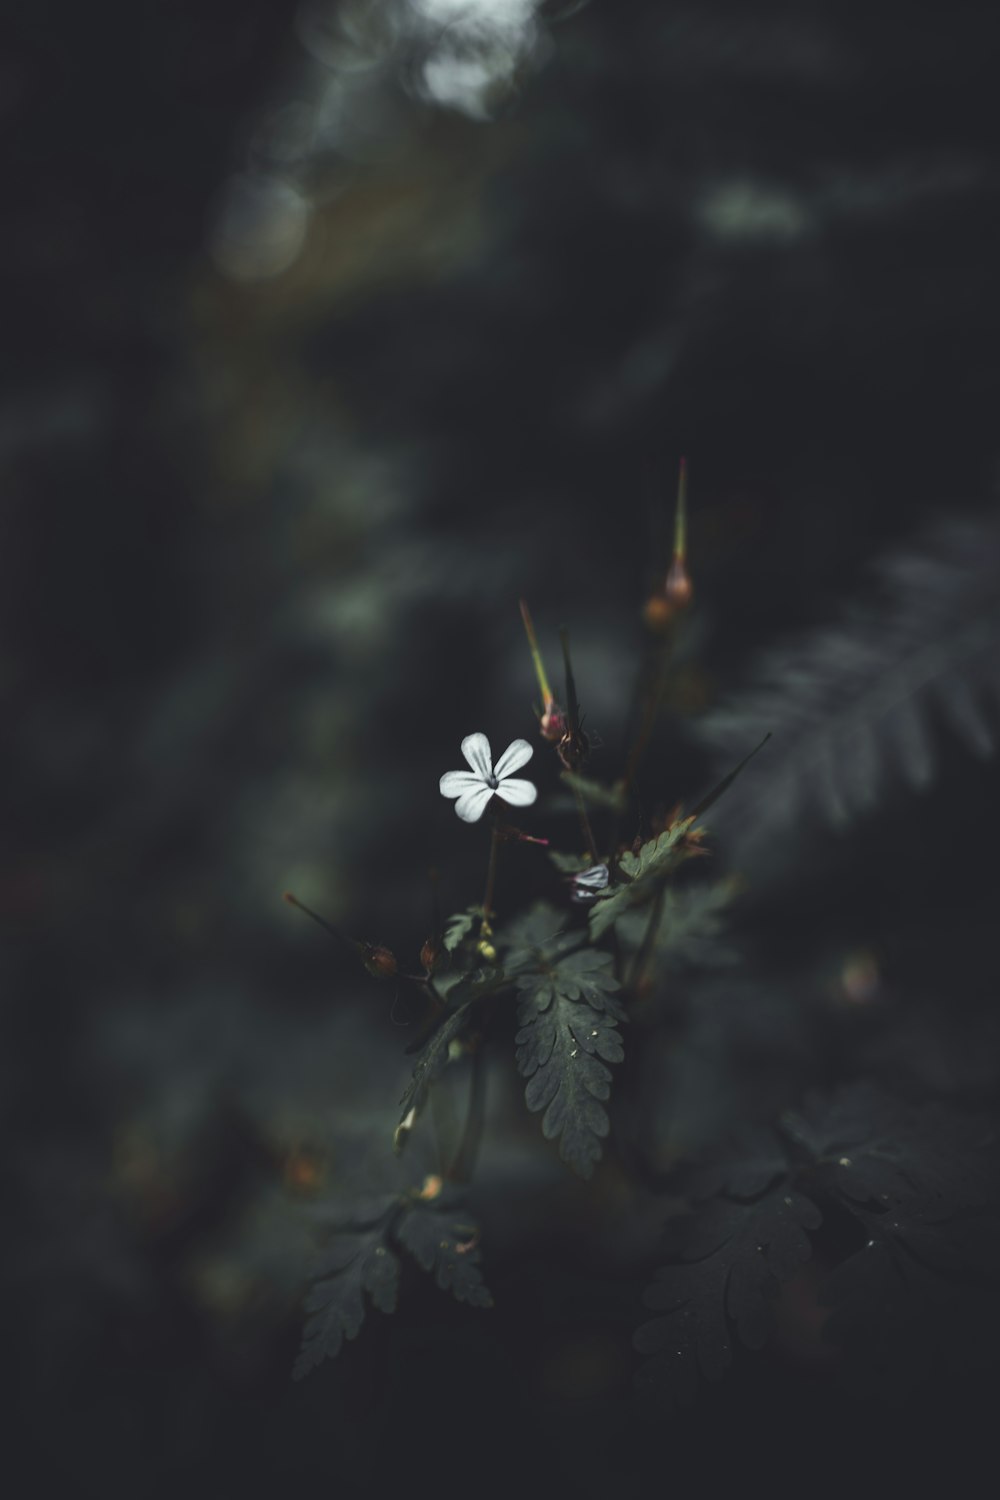 Flachfokusfotografie einer grünblättrigen Pflanze mit weißer Blüte